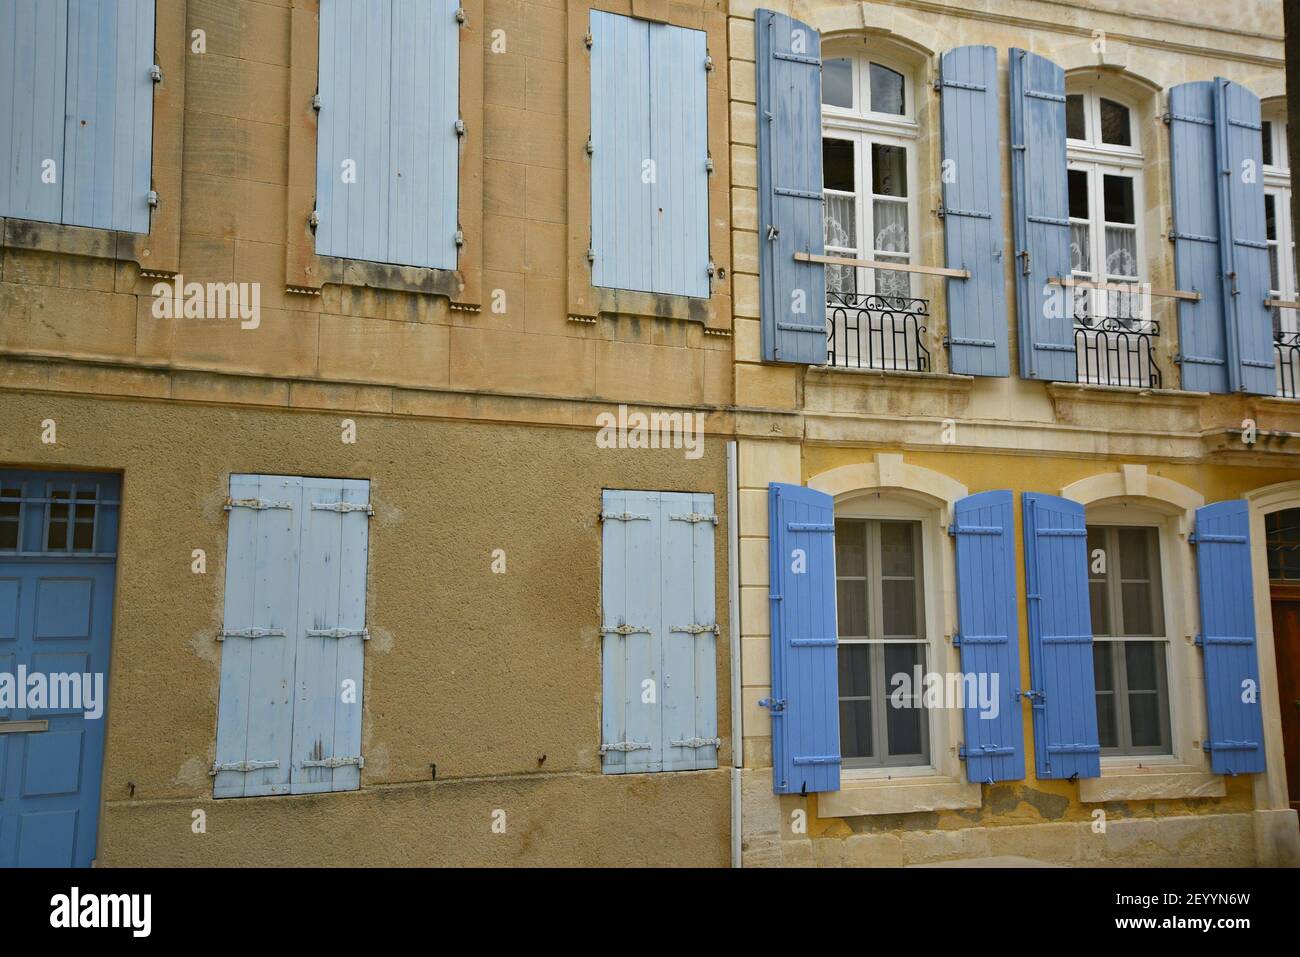 Façade ancienne de maison de style provençal dans le centre historique de Saint-Rémy-de-Provence, Bouches-du-Rhône Provence-Alpes-Côte d'Azur, France. Banque D'Images